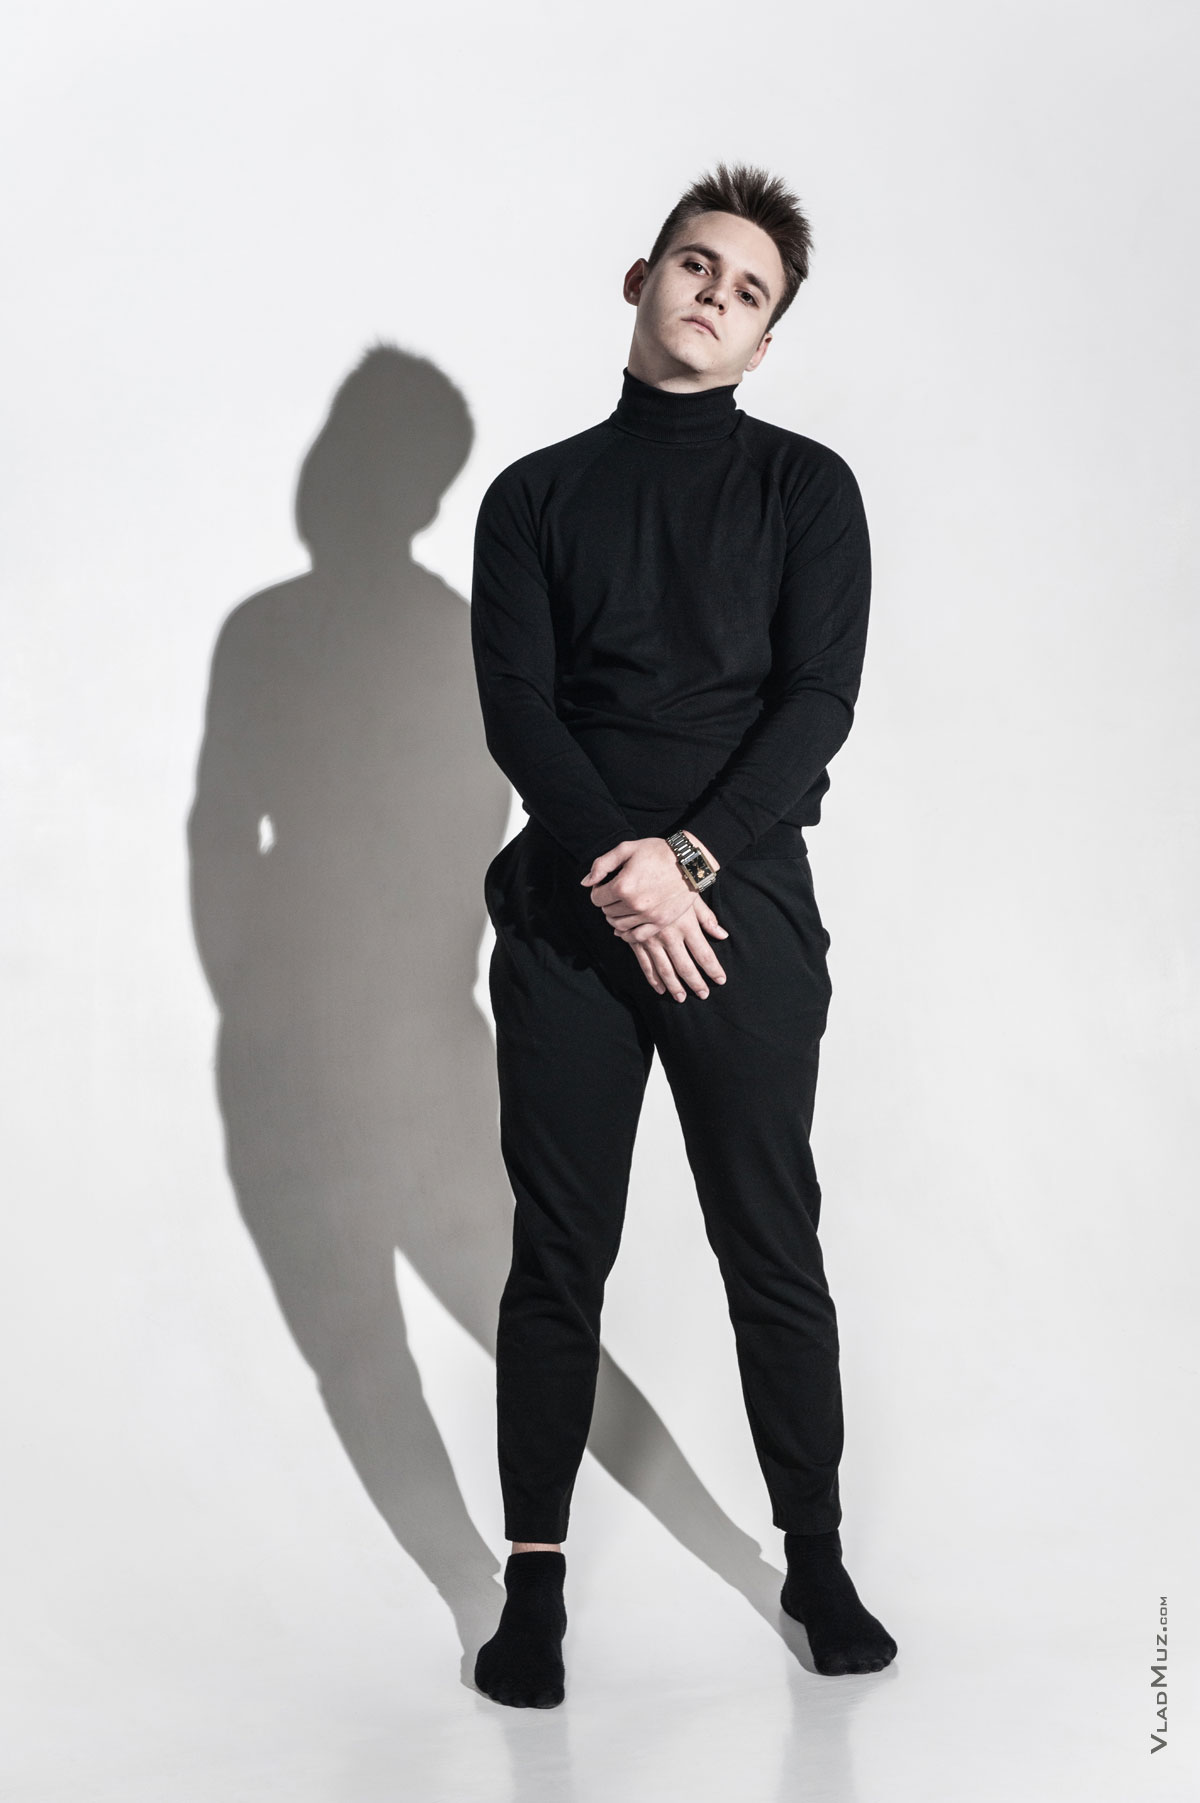 Фото мужчины-модели в черном в полный рост, на белой циклораме, с тенью на фоне